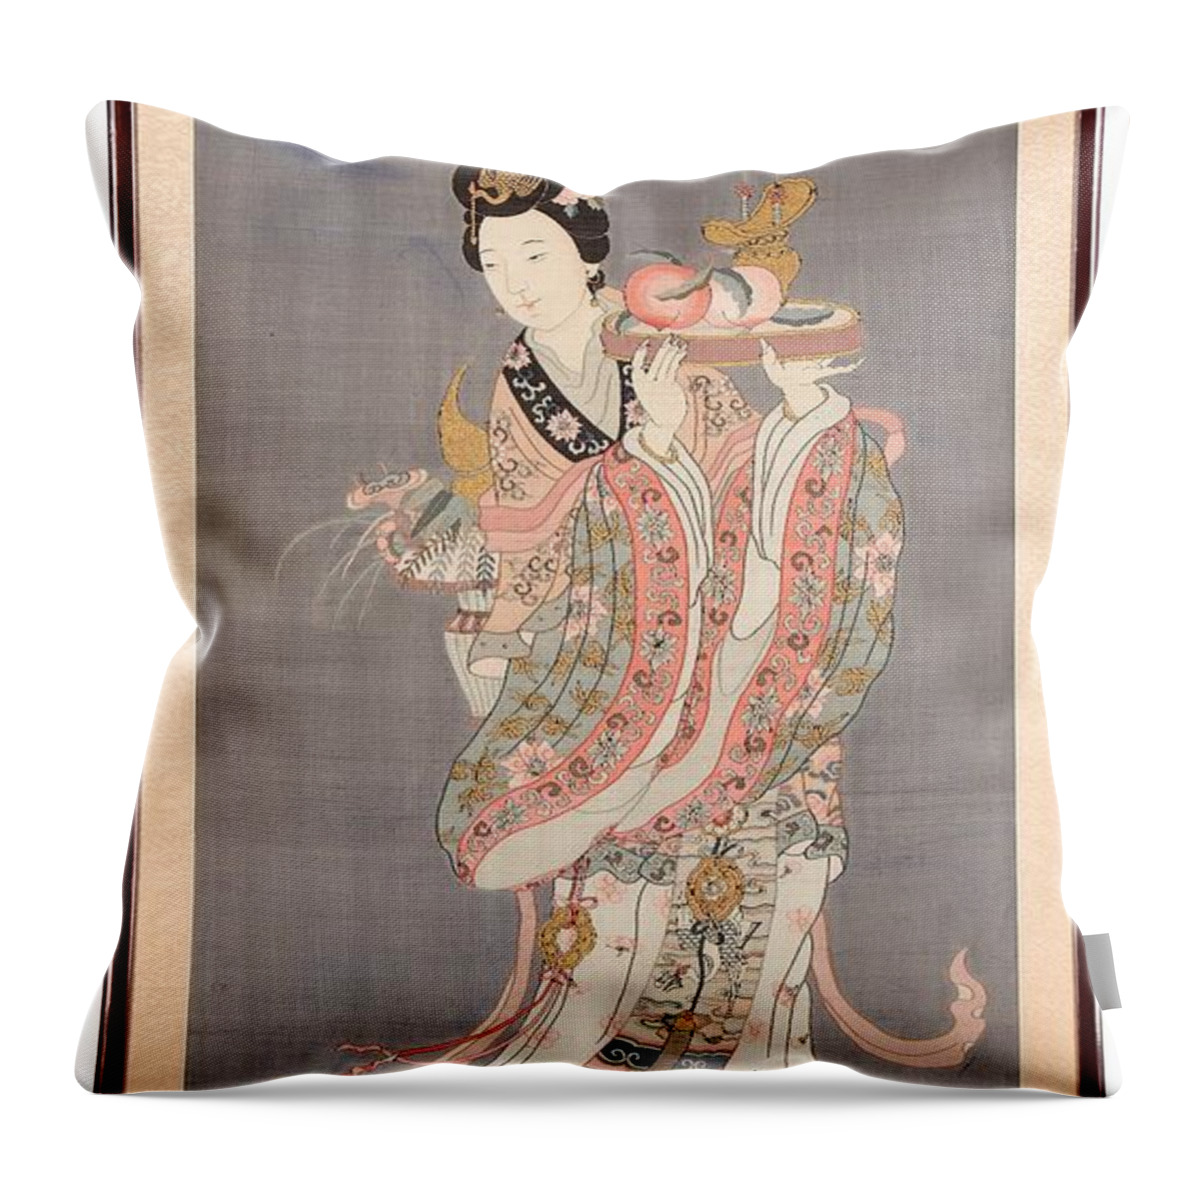 Qi Wang Mu Throw Pillow featuring the painting Xi Wang Mu carrying by MotionAge Designs